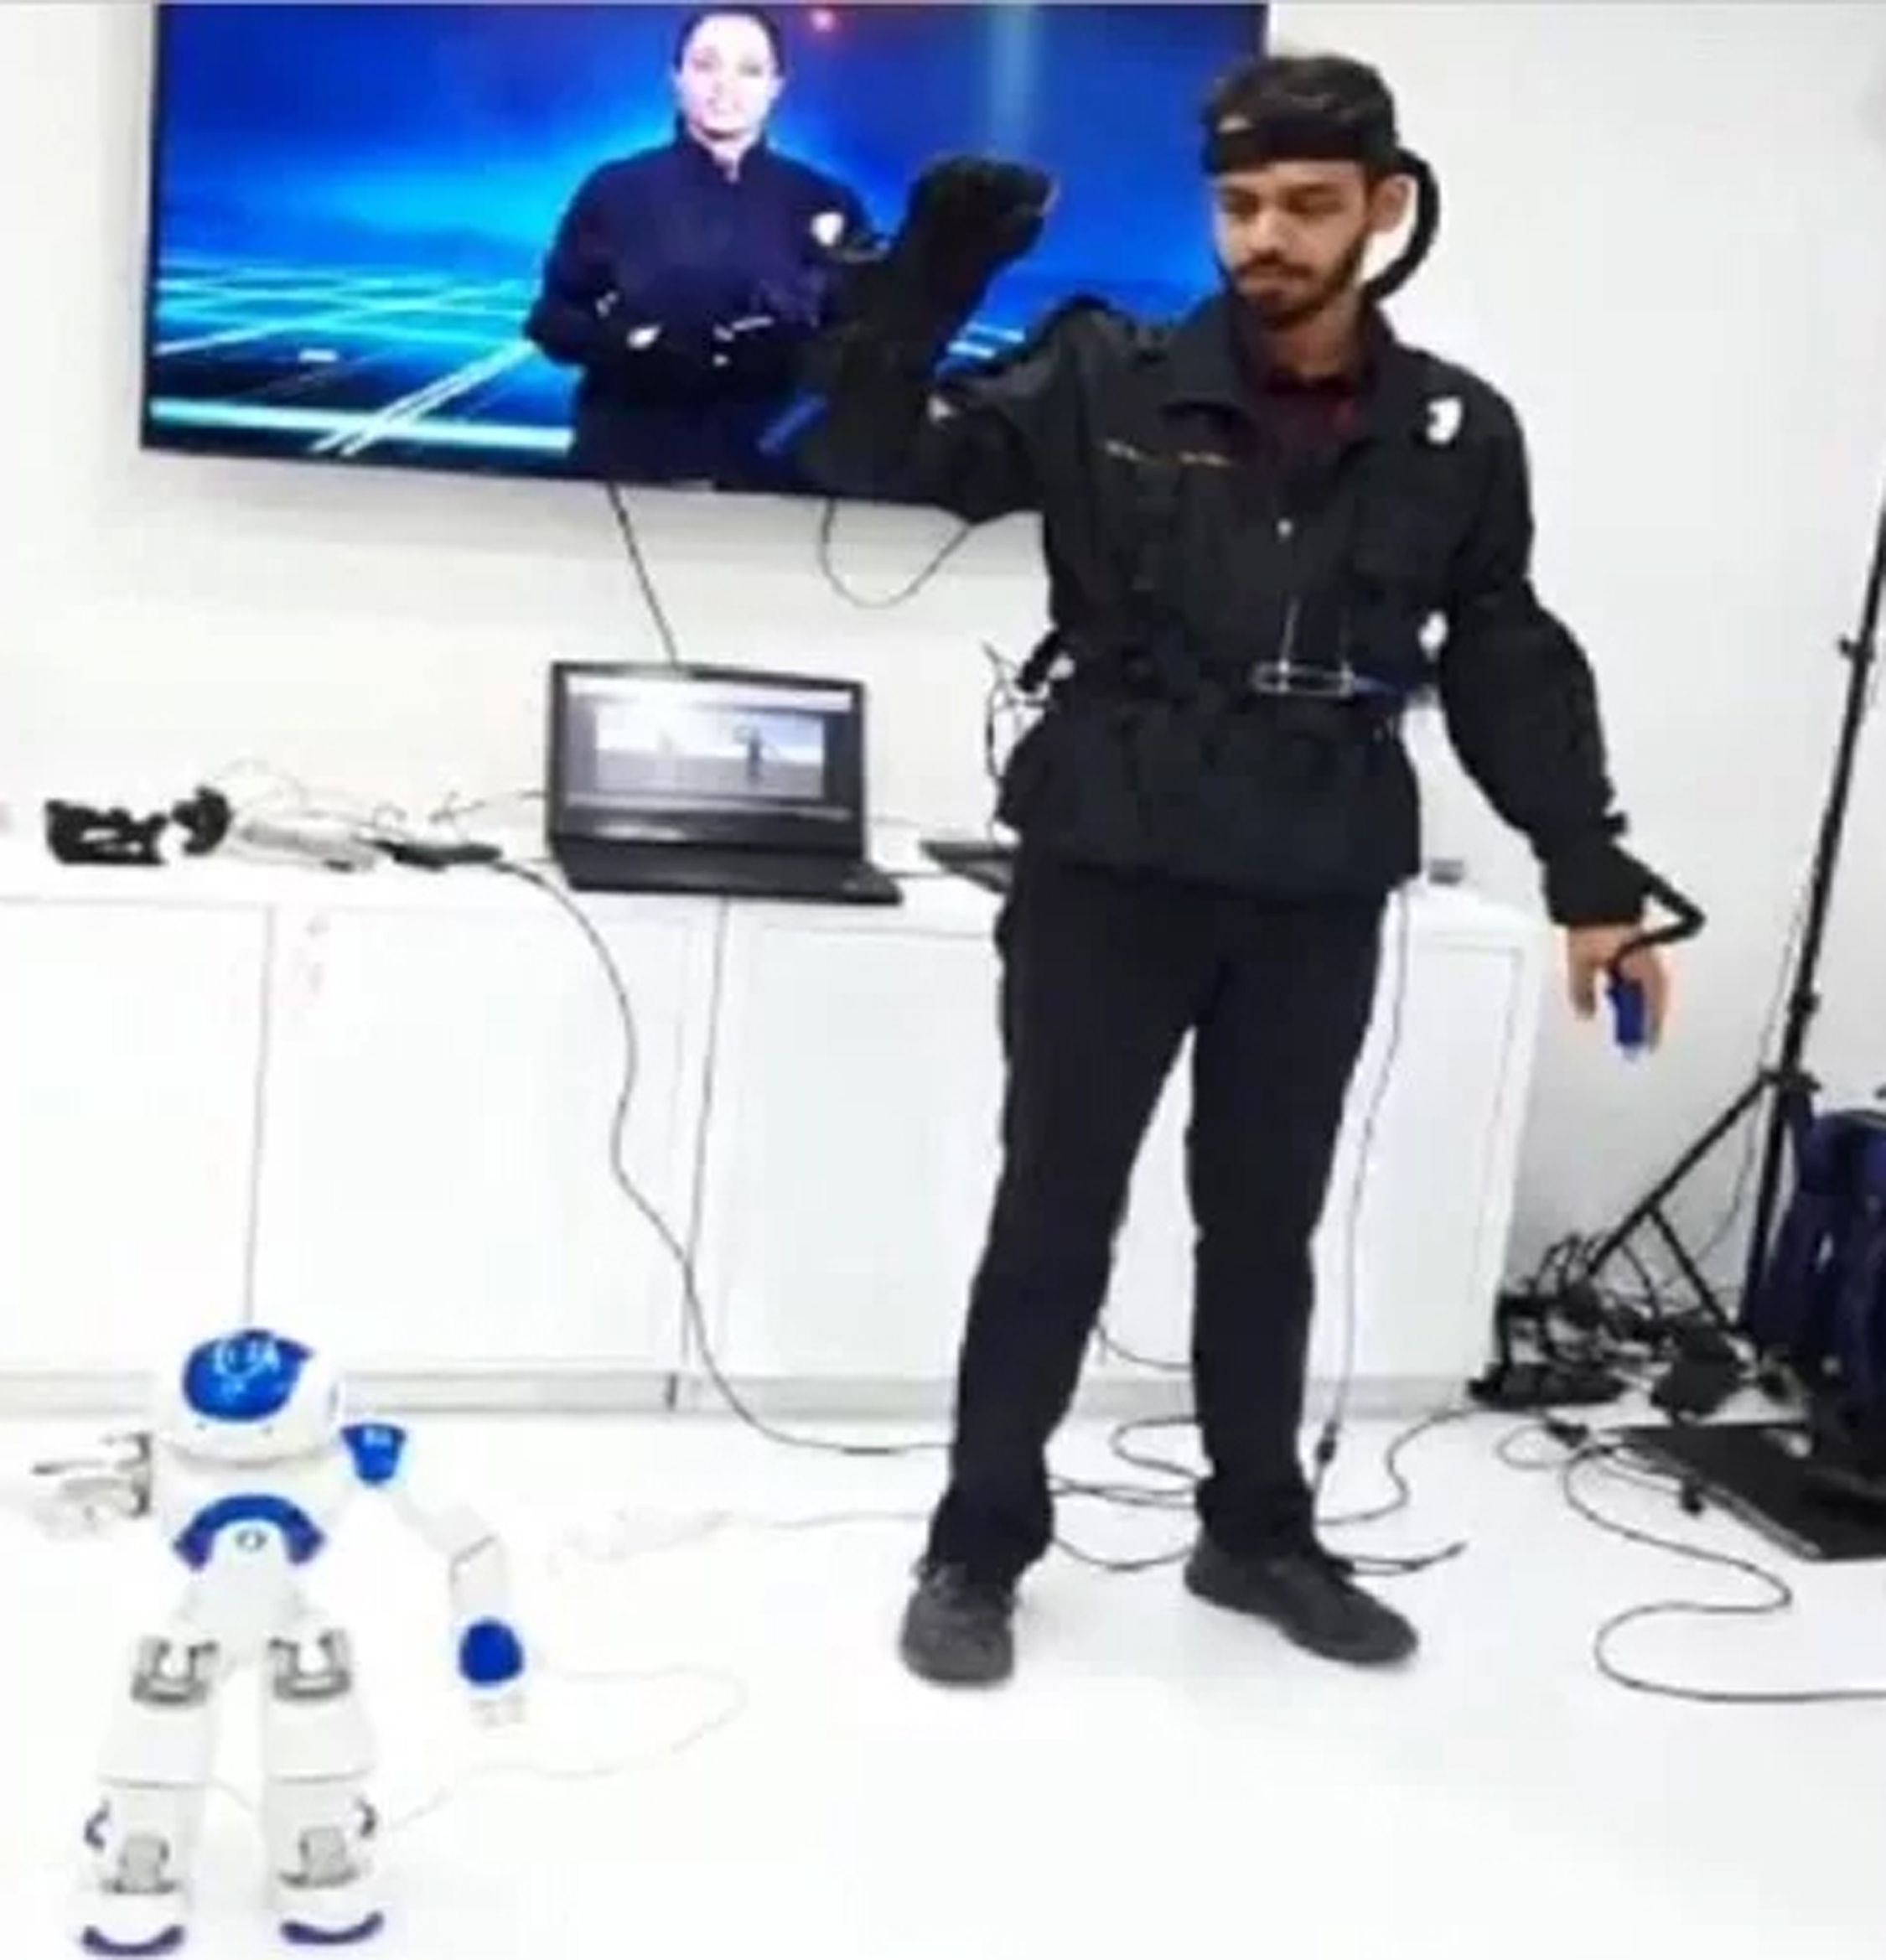 डिफेंस एक्सपो २०२०: आयरन मैन ने बनाई है रोबोट आर्मी, मोदी के न्योते पर लौटे थे स्वदेश